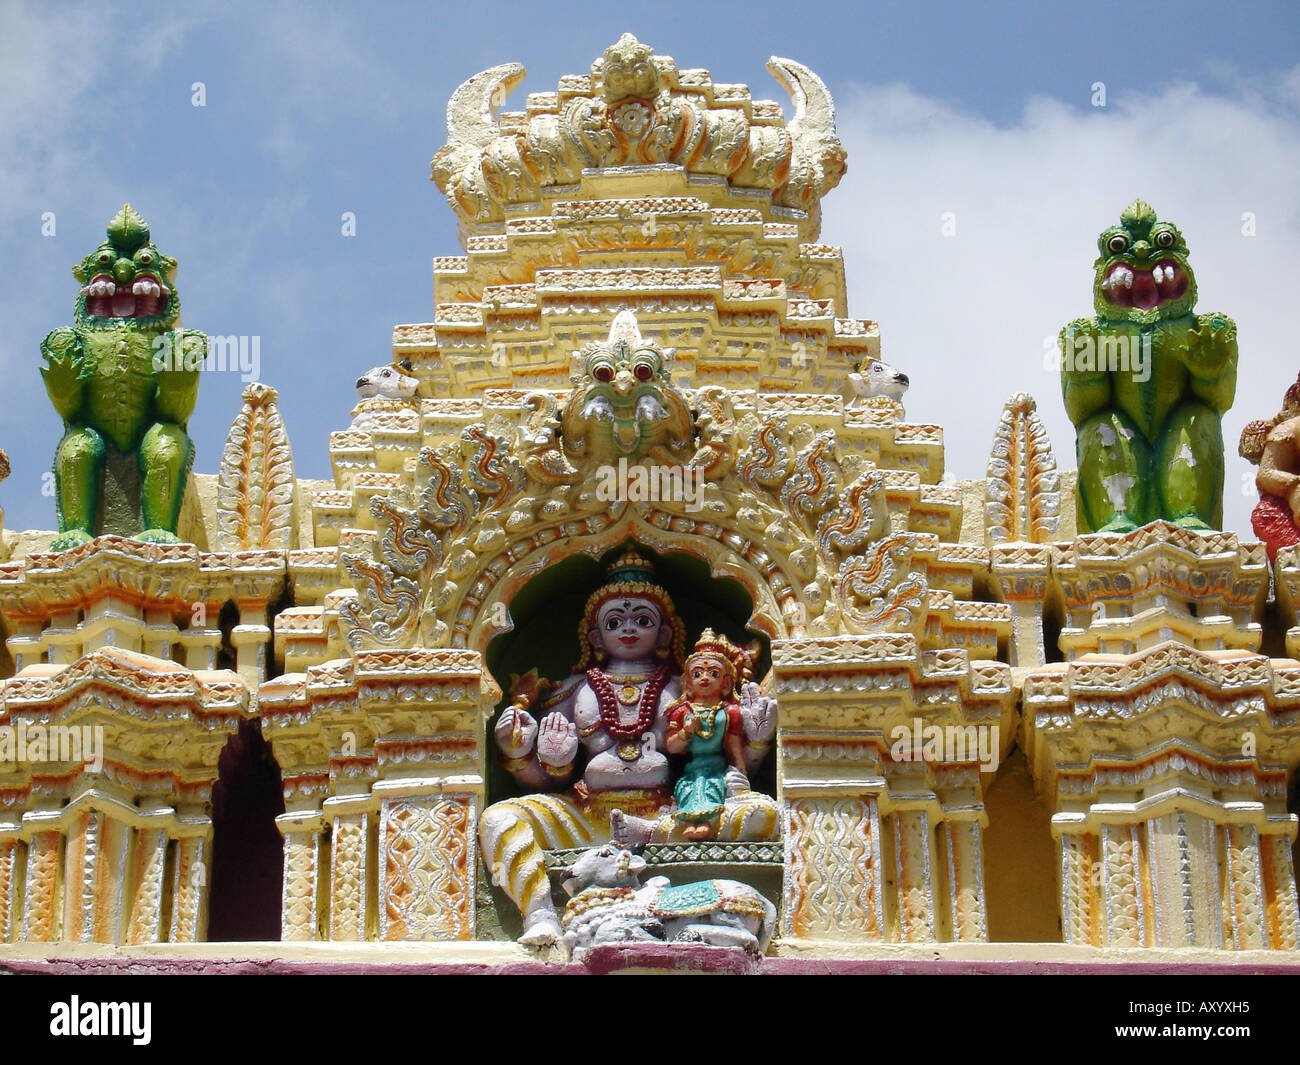 Big and richly decorated tempel with figures of Gods, India, Karnataka, Bangalore Stock Photo